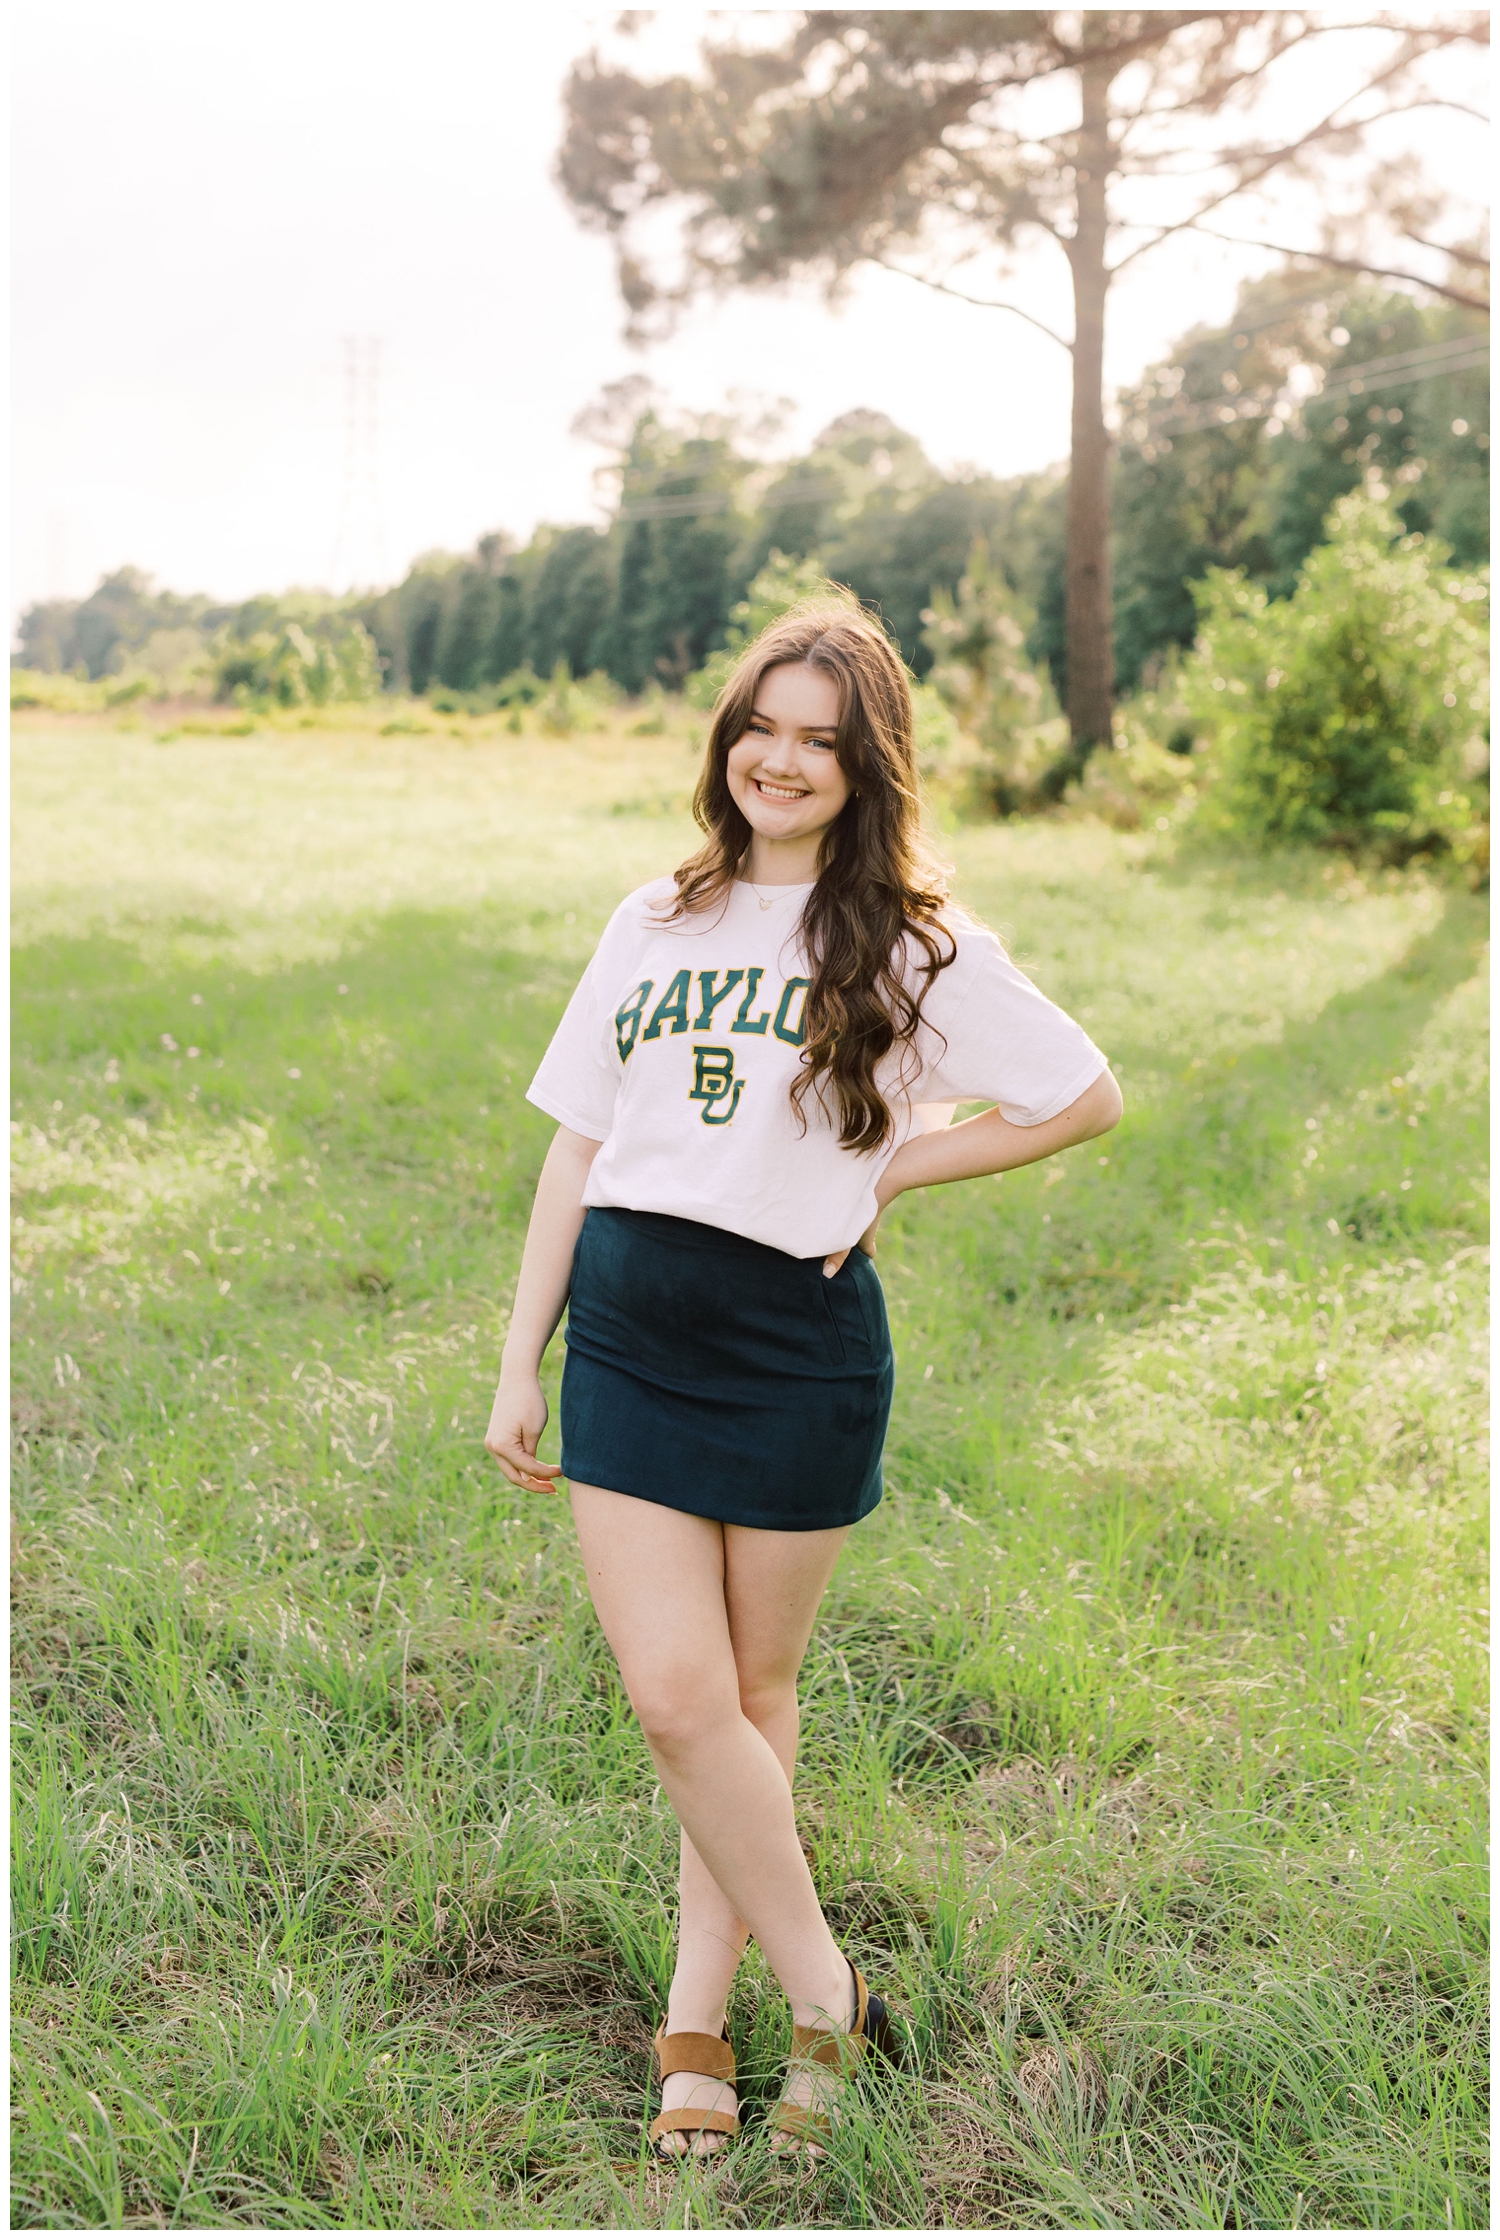 girl standing in a field in Baylor tshirt for Houston Senior Model Team